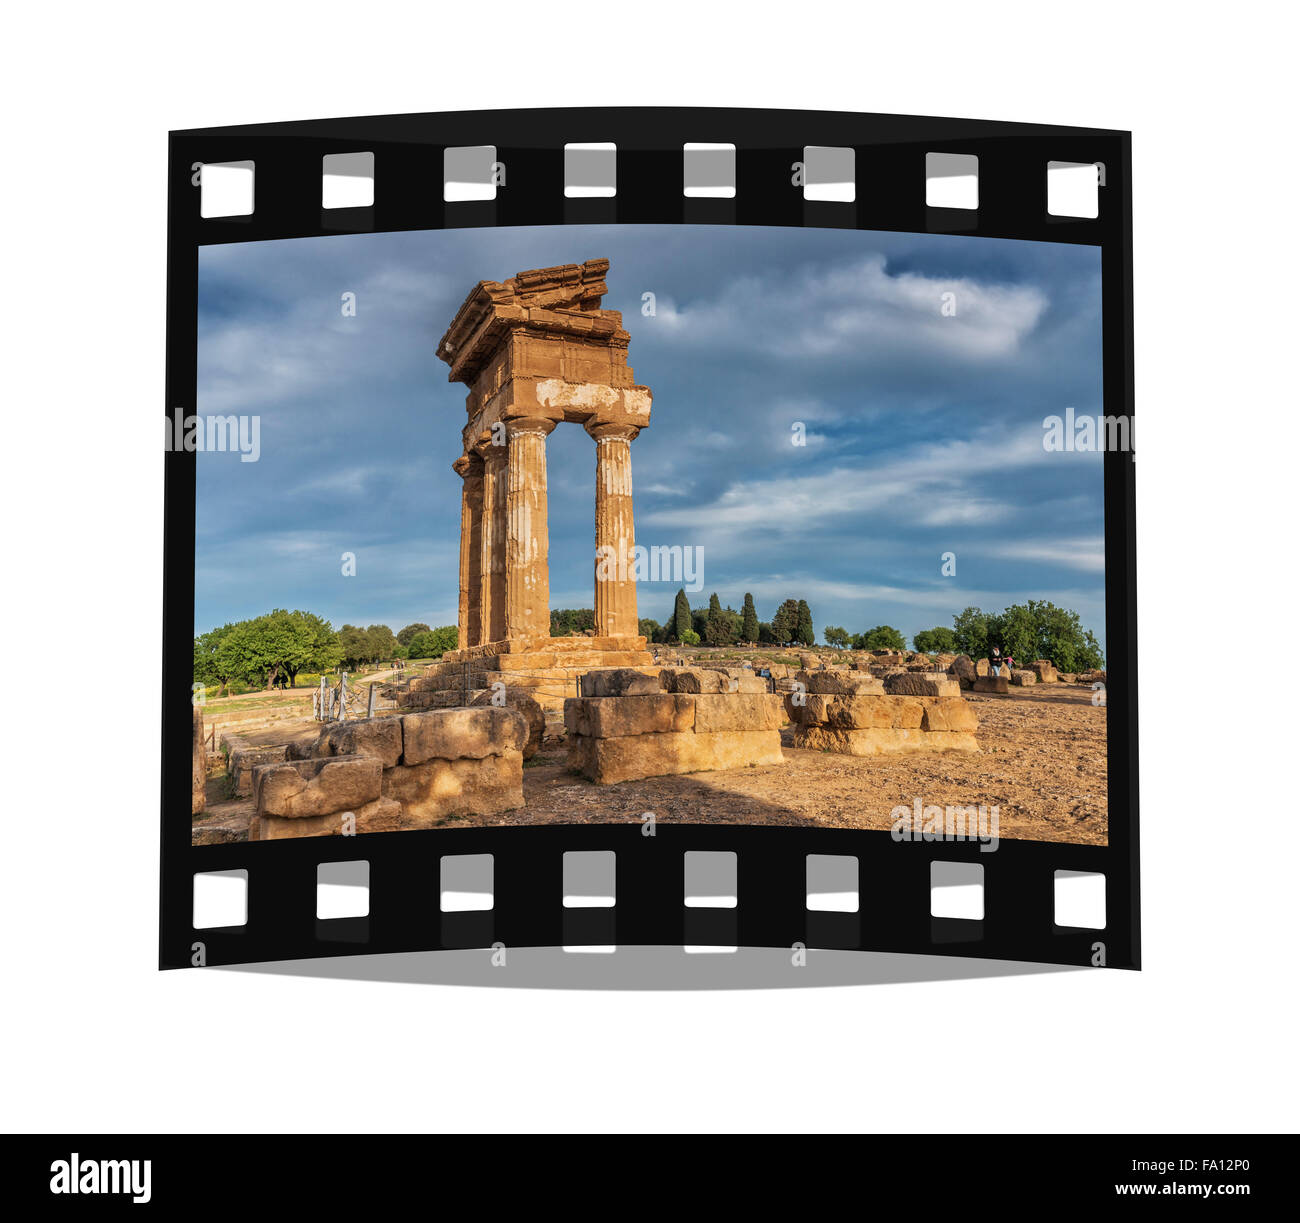 Le Temple de Castor et Pollux appartient à des sites archéologiques d'Agrigente, La Vallée des Temples, Sicile, Italie, Europe Banque D'Images